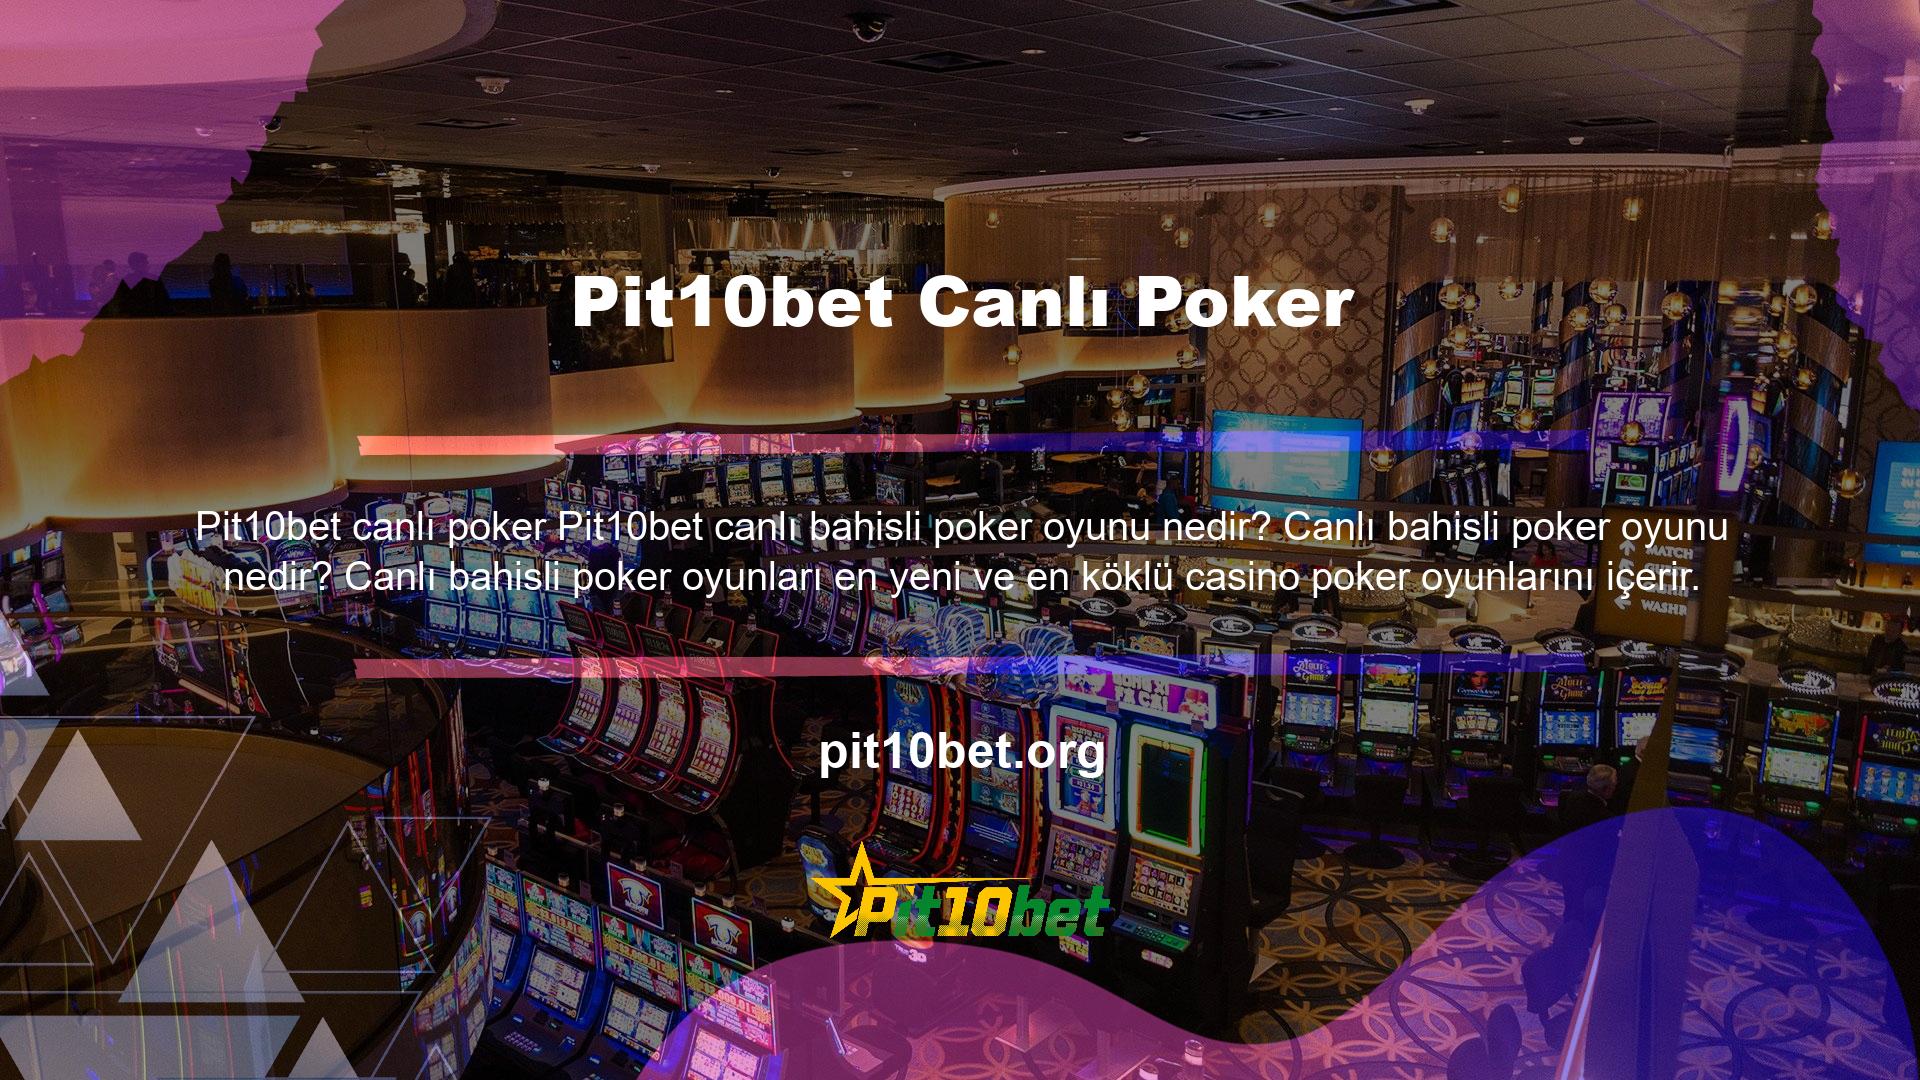 Pit10bet Canlı Poker geniş bir oyun yelpazesi sunuyor